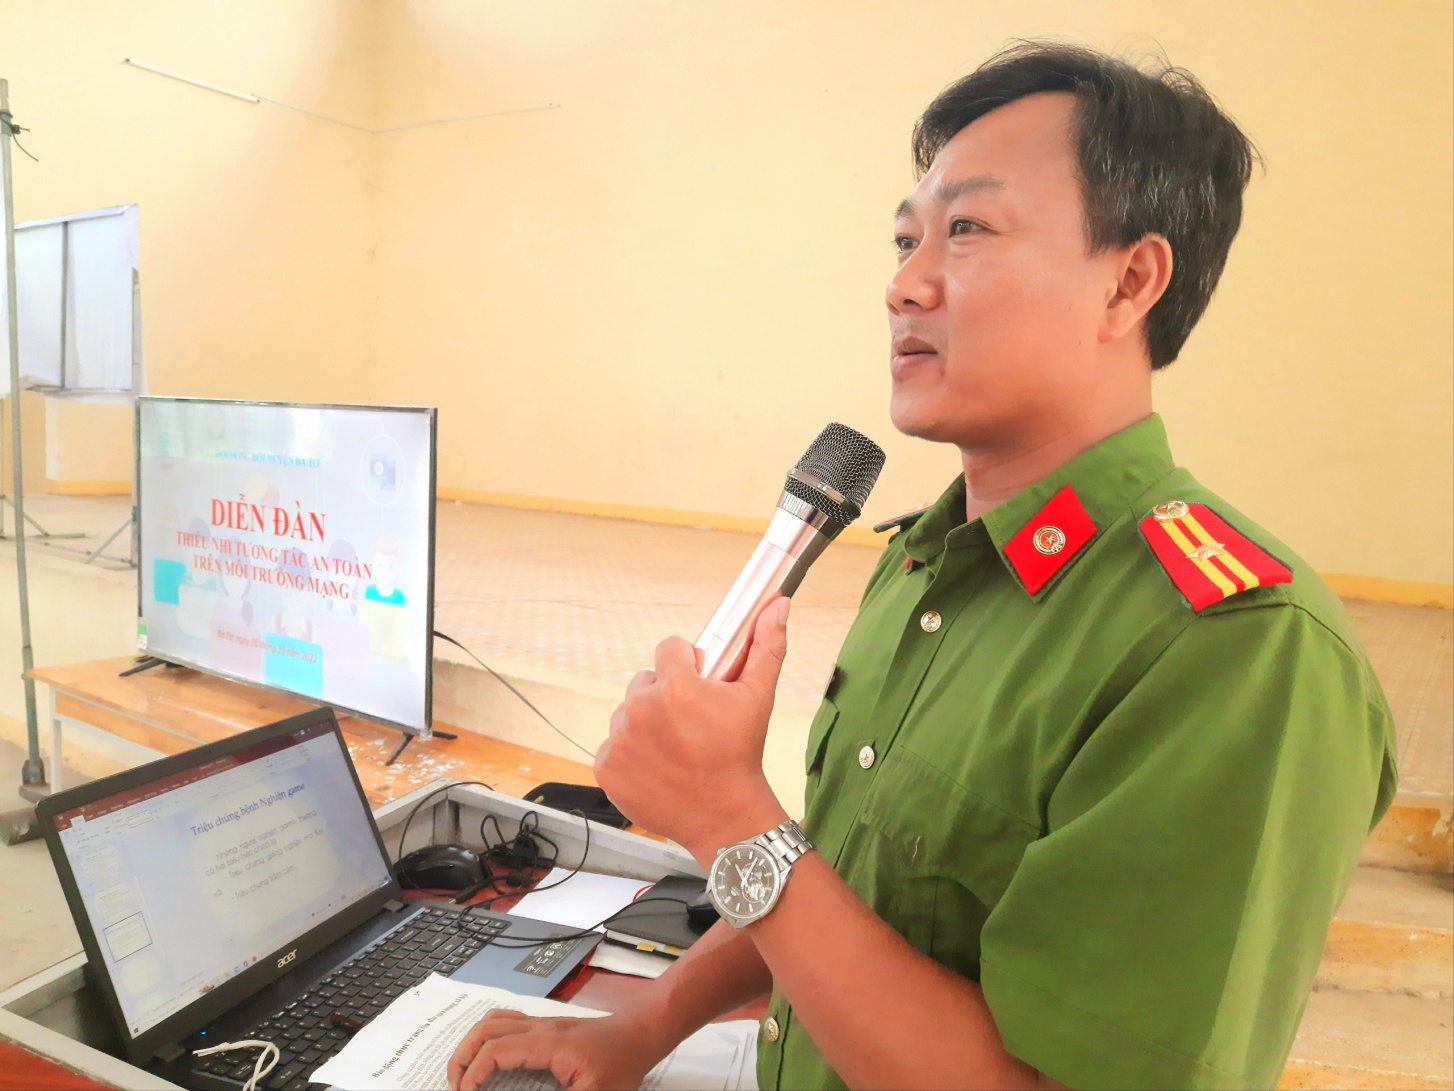 Hội đồng đội huyện Ba Tơ tổ chức Diễn đàn “Thiếu nhi tương tác an toàn trên môi trường mạng” năm 2022